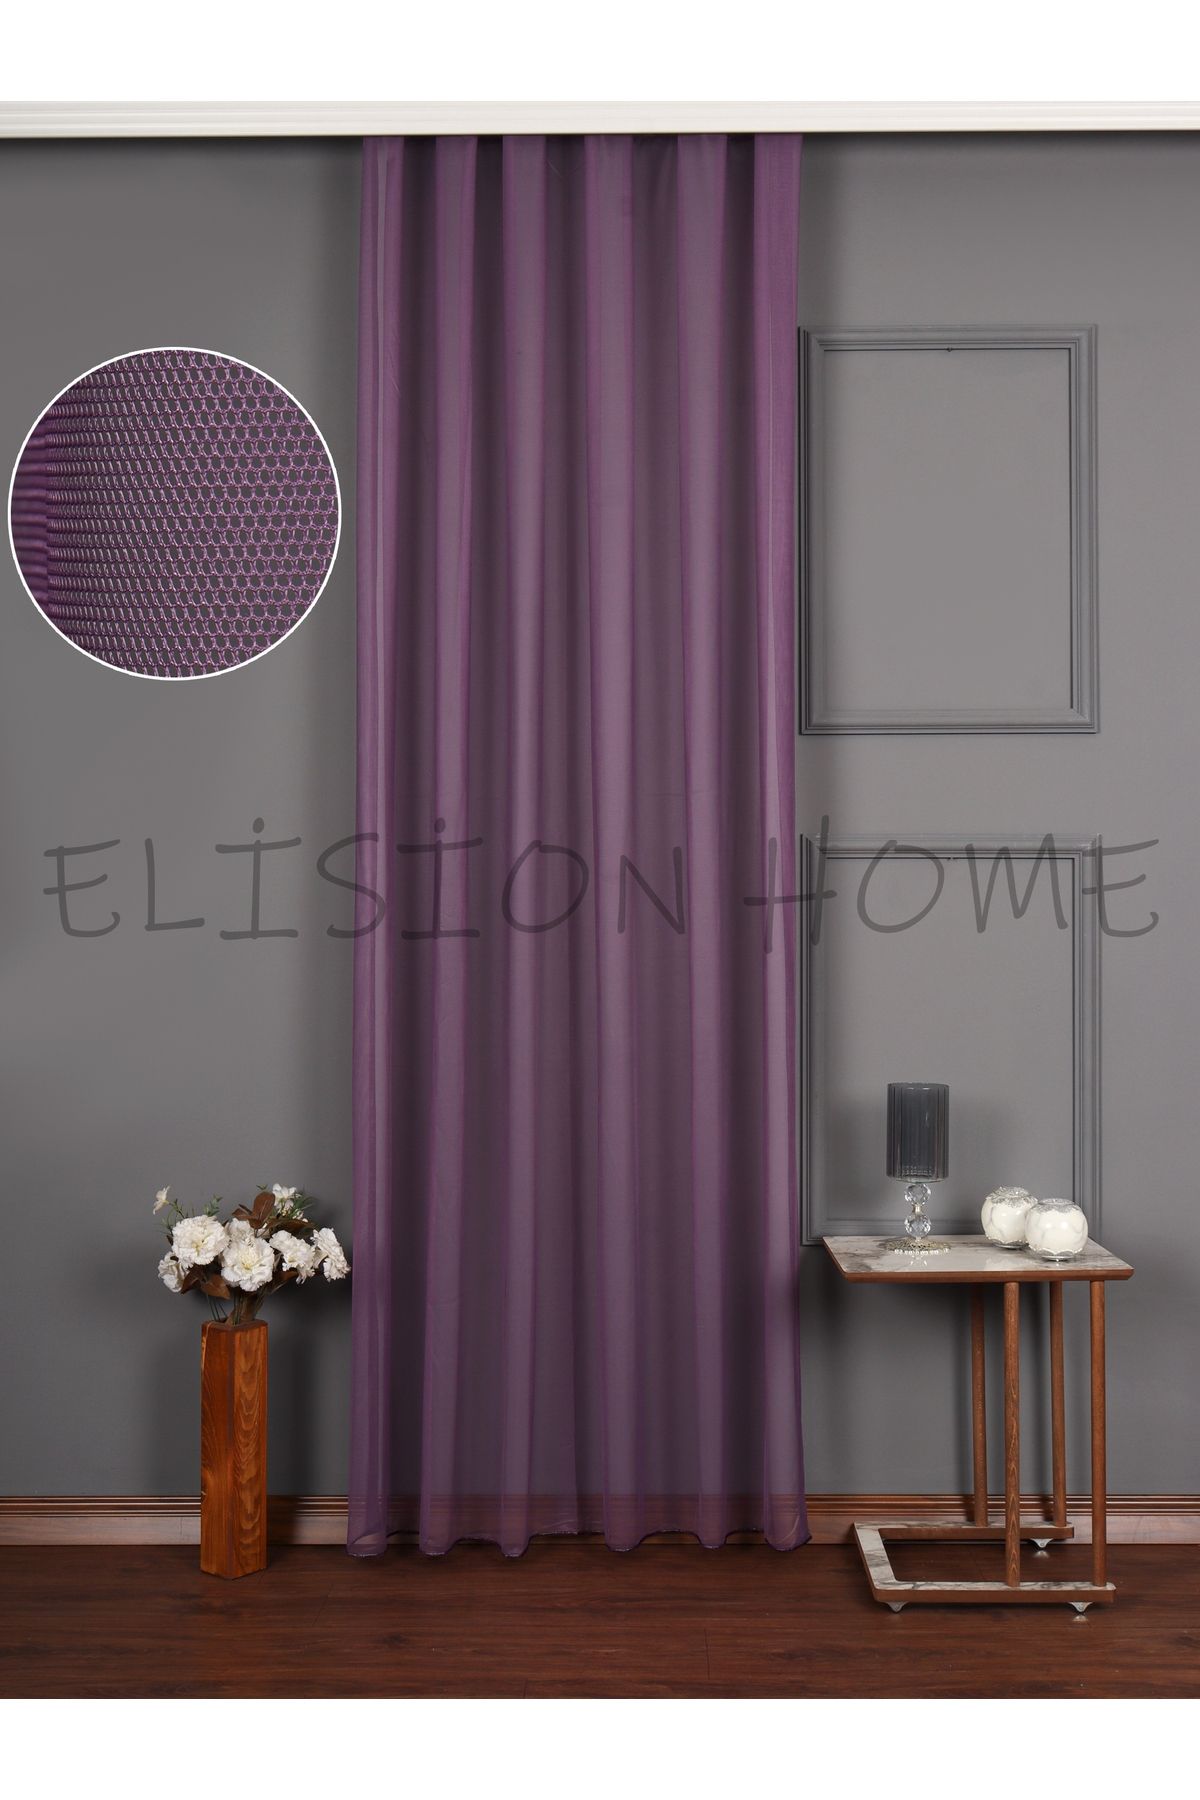 elision home Mor Rengi Grek Tül Fon Perde Ekstrafor Büzgülü (Bağcık Hediye)